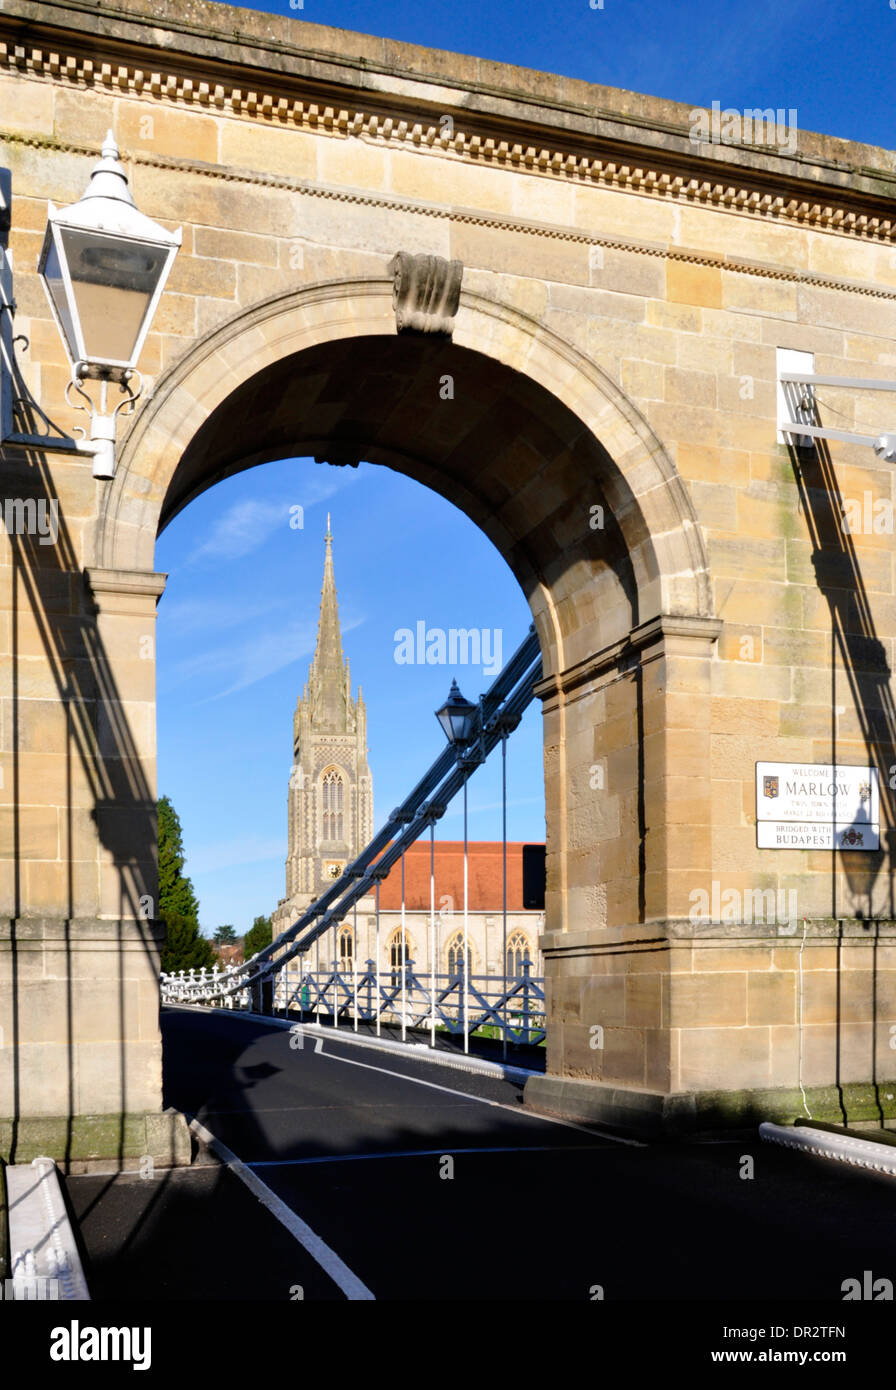 Bucks - Marlow sul Tamigi - visualizzazione attraverso l'imponente ponte di sospensione arco alla Chiesa di tutti i santi - la luminosa luce del sole blu cielo Foto Stock